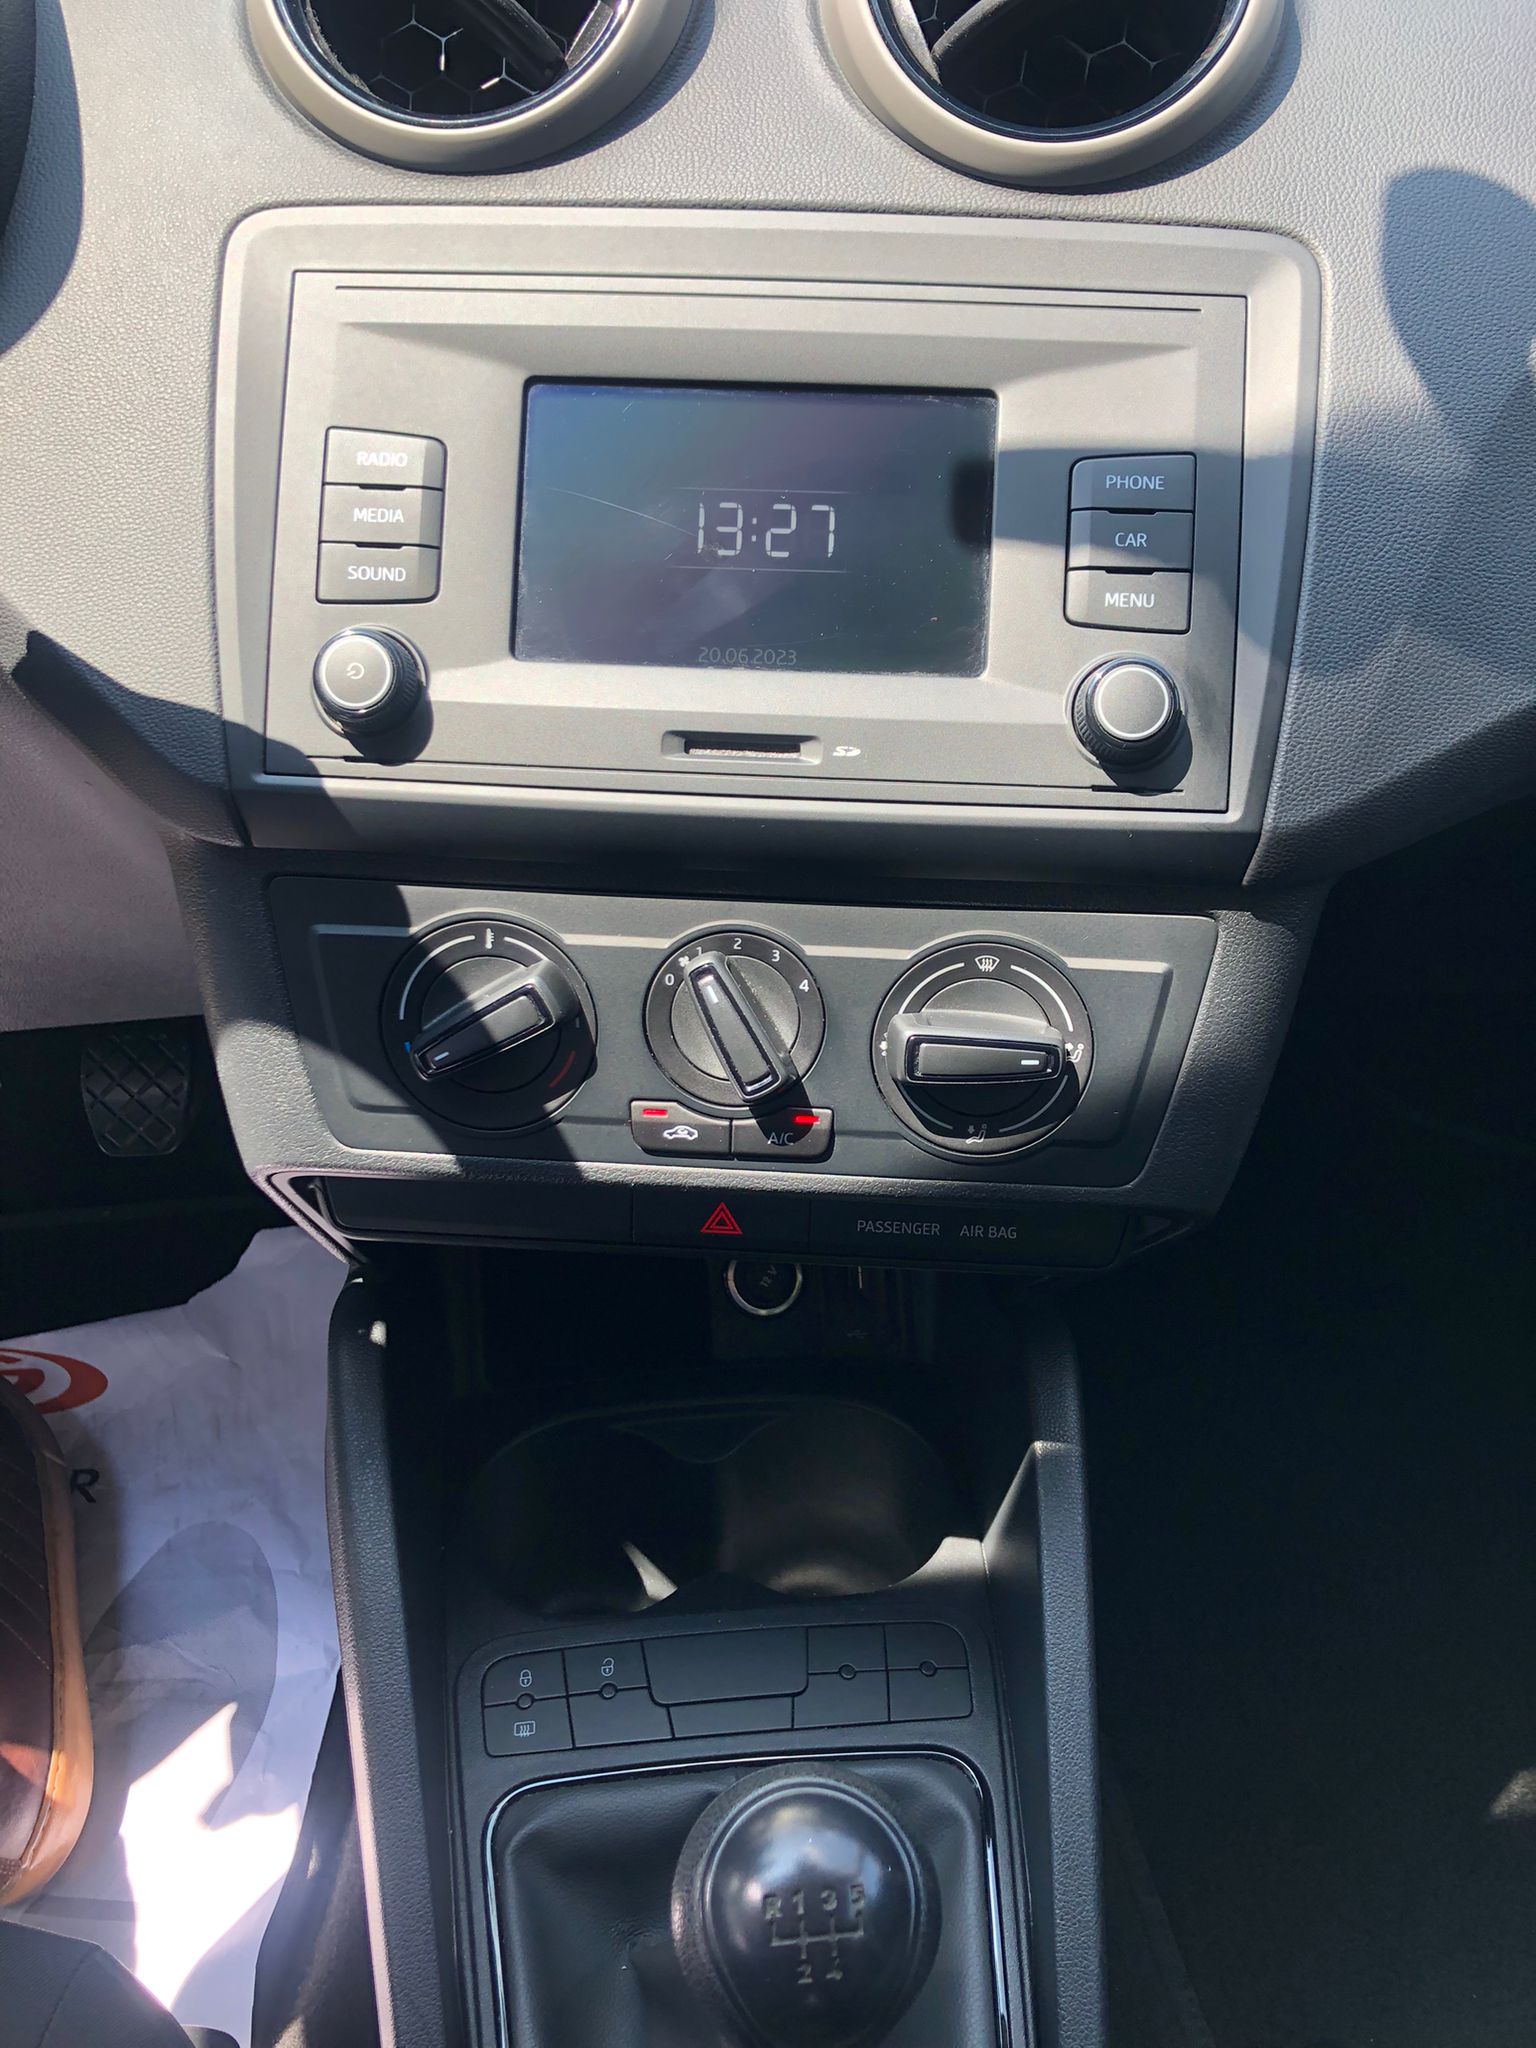 SEAT Ibiza 1.2 TSI - pantalla y mandos